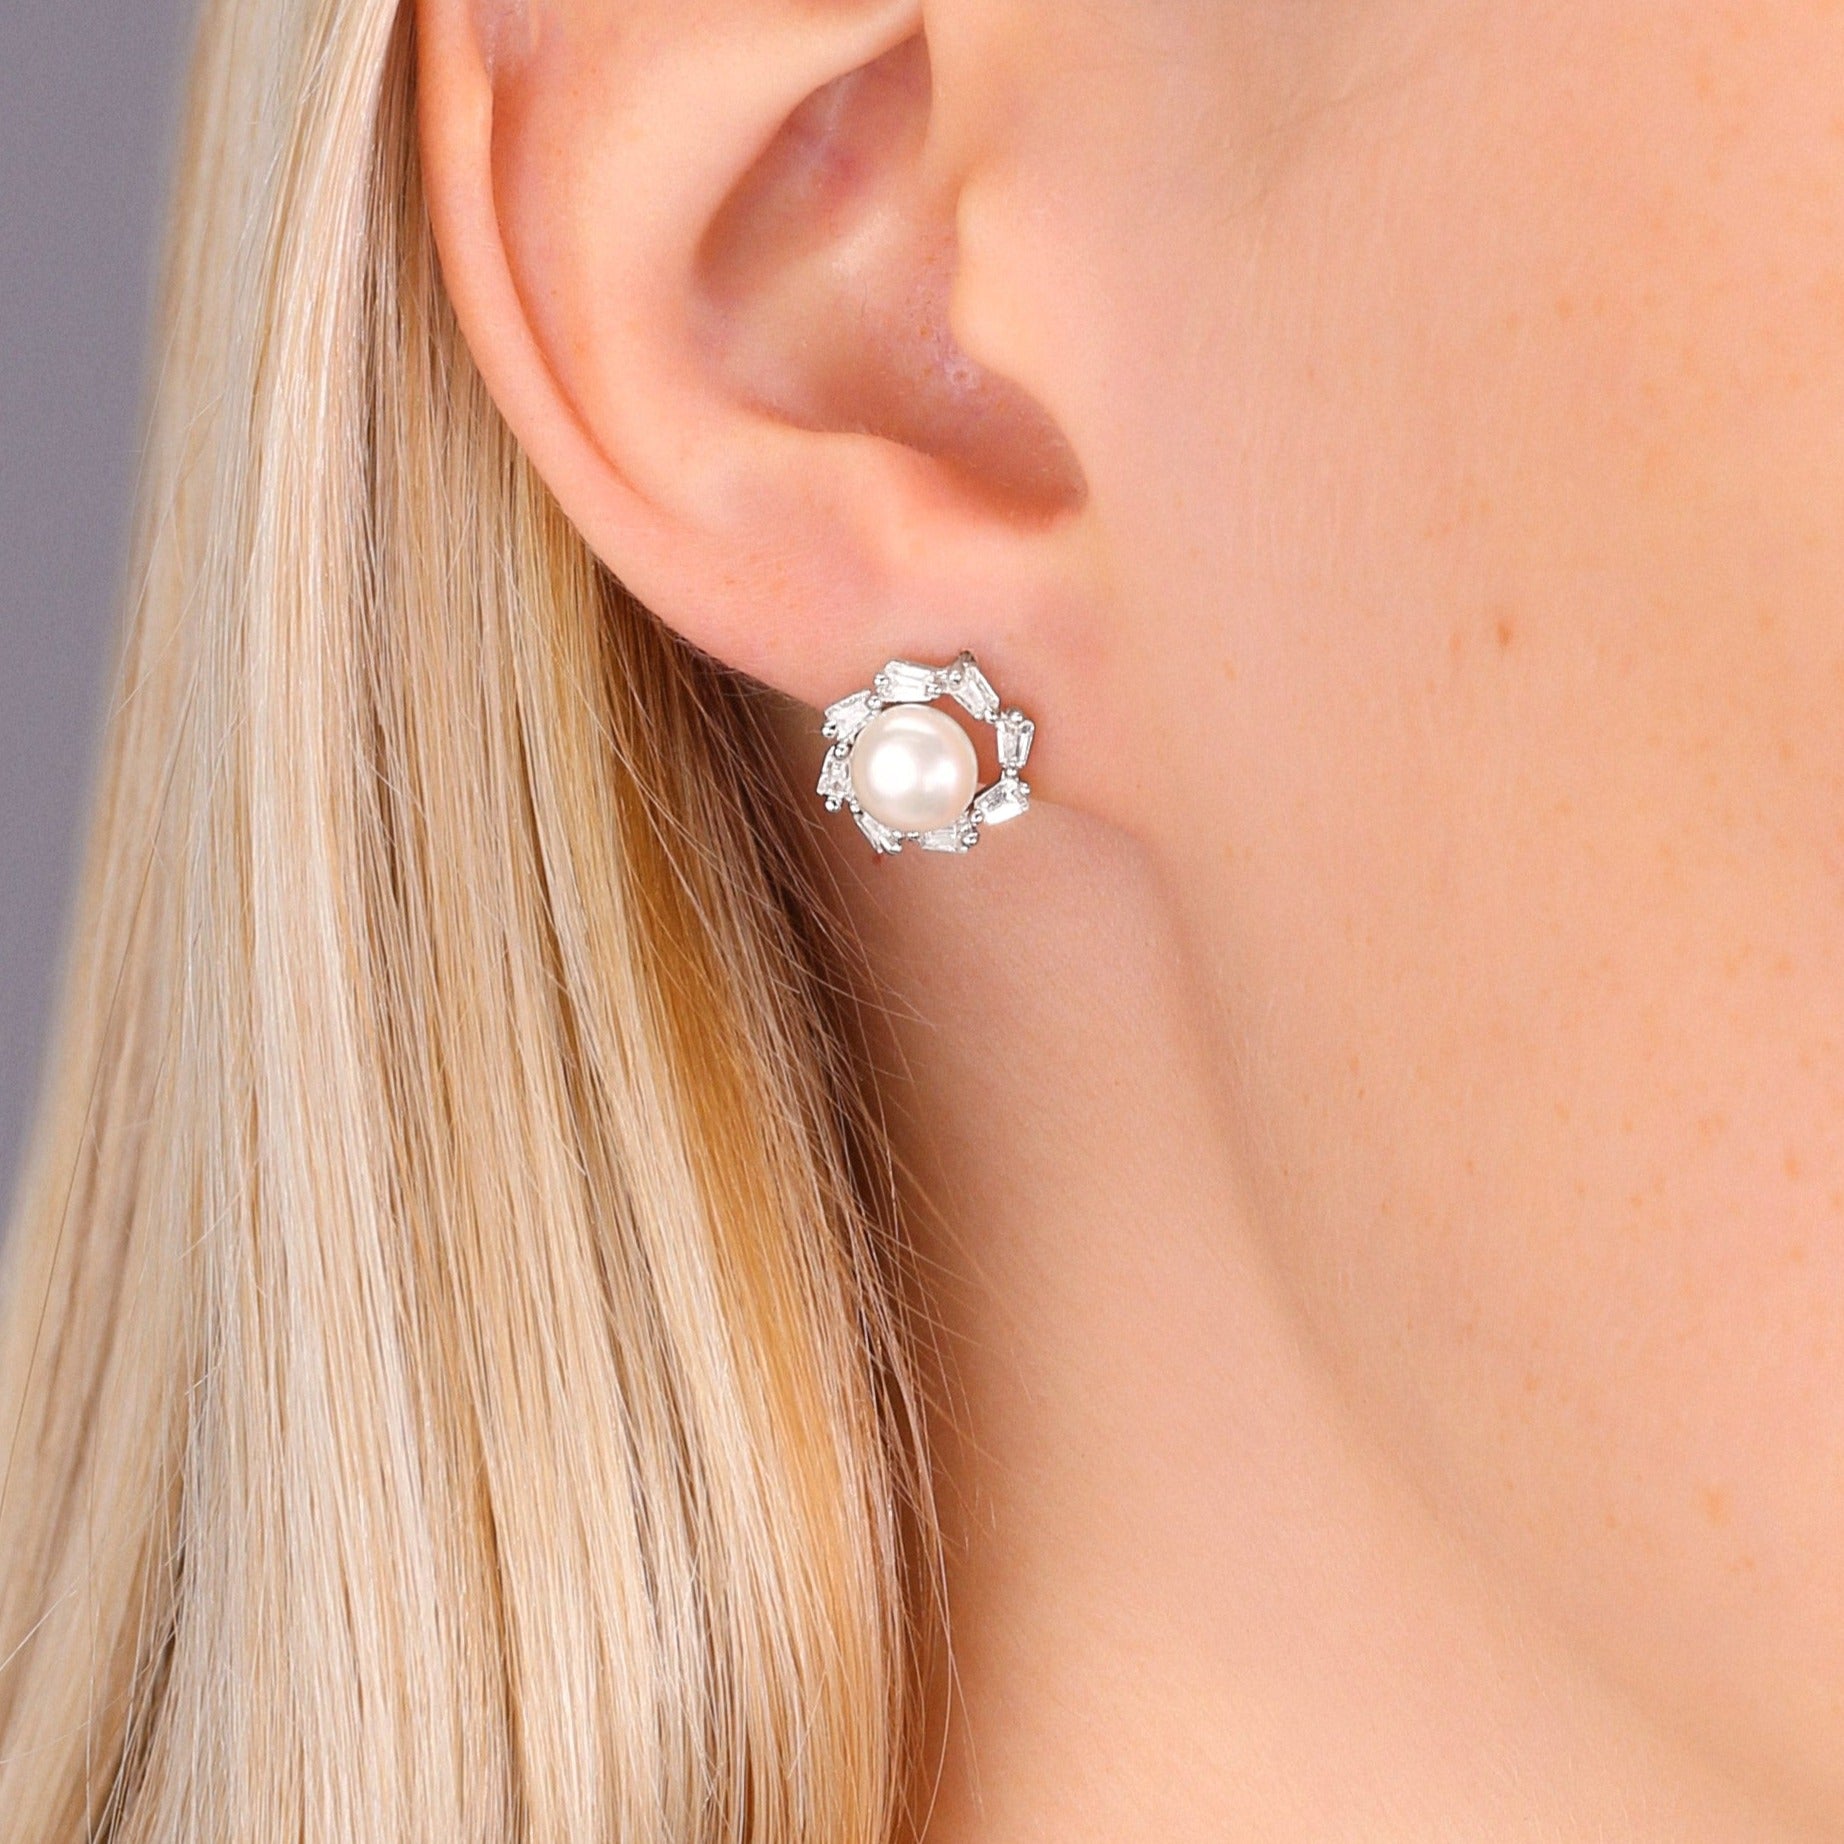 CZ Halo Pearl Stud Earrings in Sterling Silver